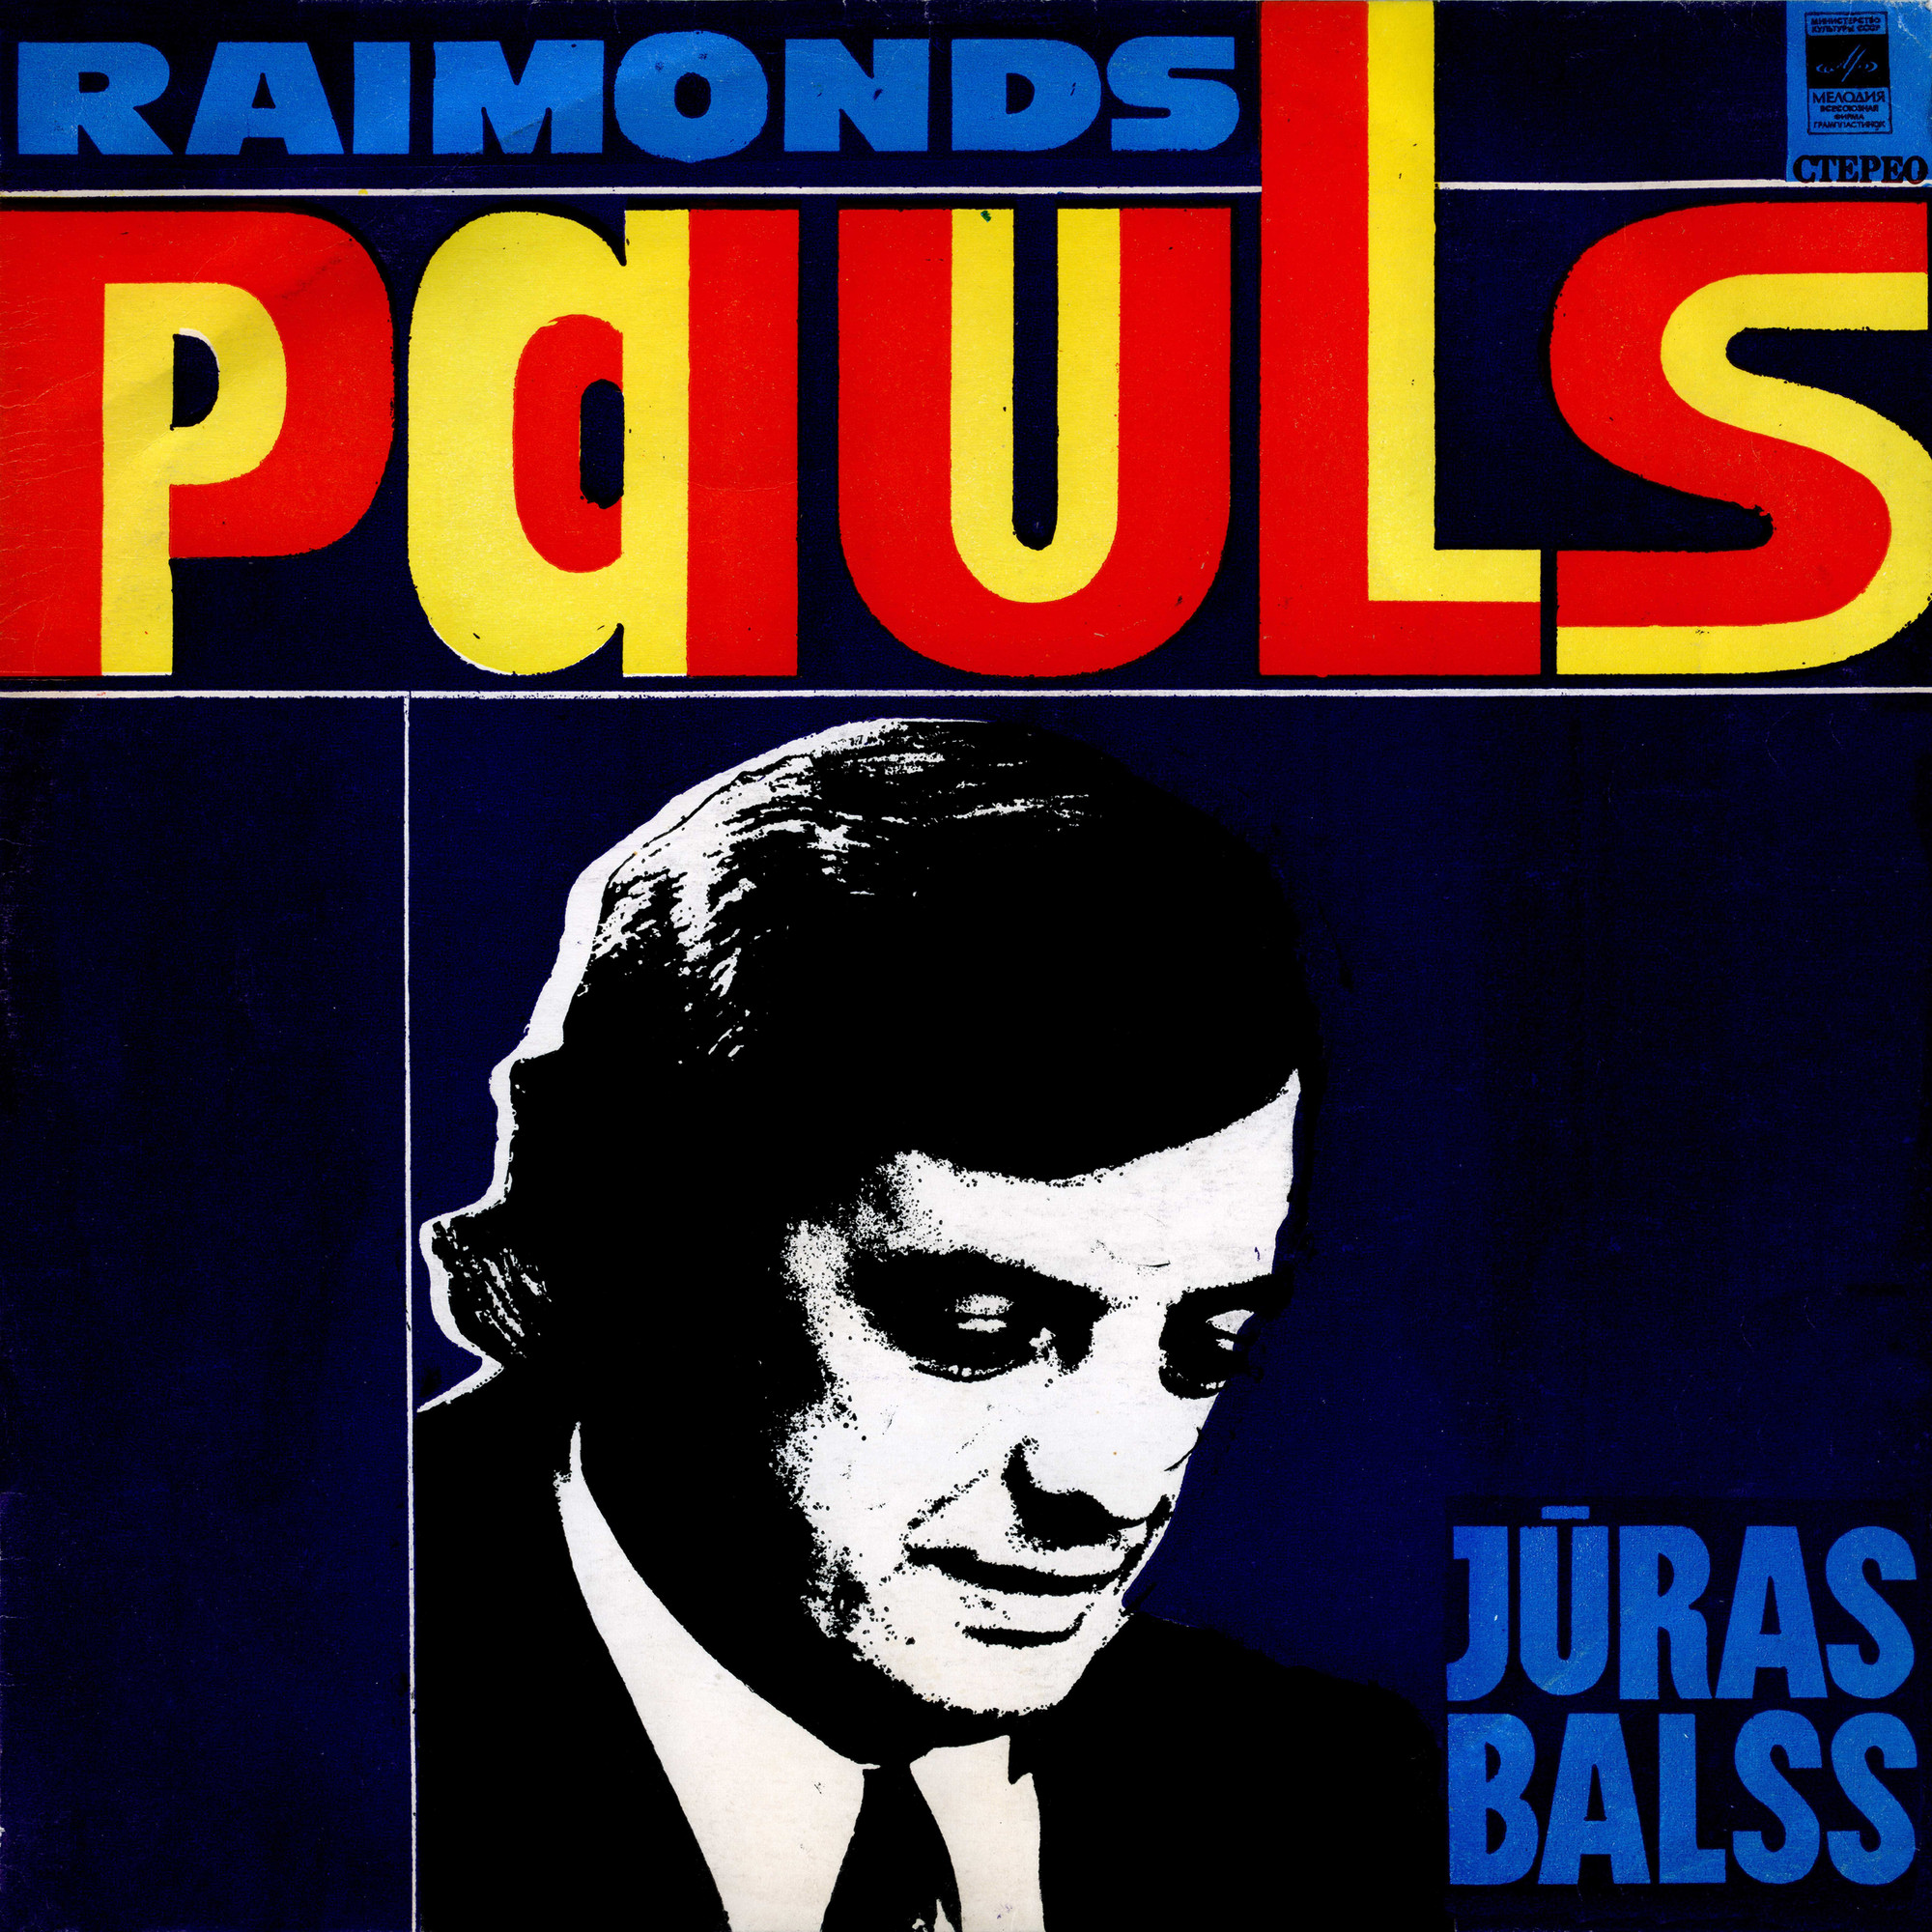 Раймондс ПАУЛС (1936): «Juras balss» (Голос моря). Эстрадные песни — на латышском языке